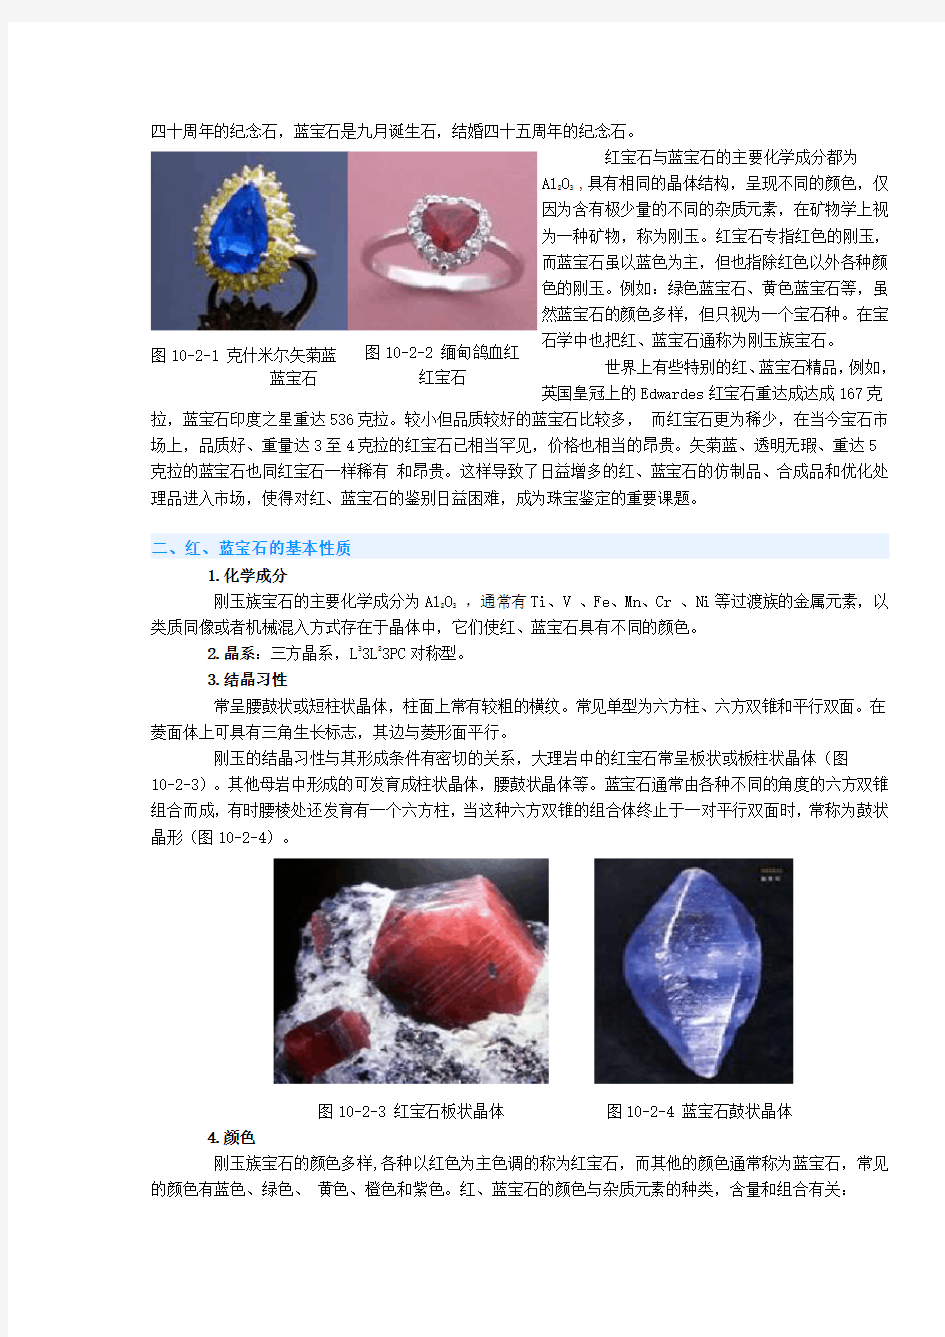 红宝石和蓝宝石的产地、特性和鉴别方法